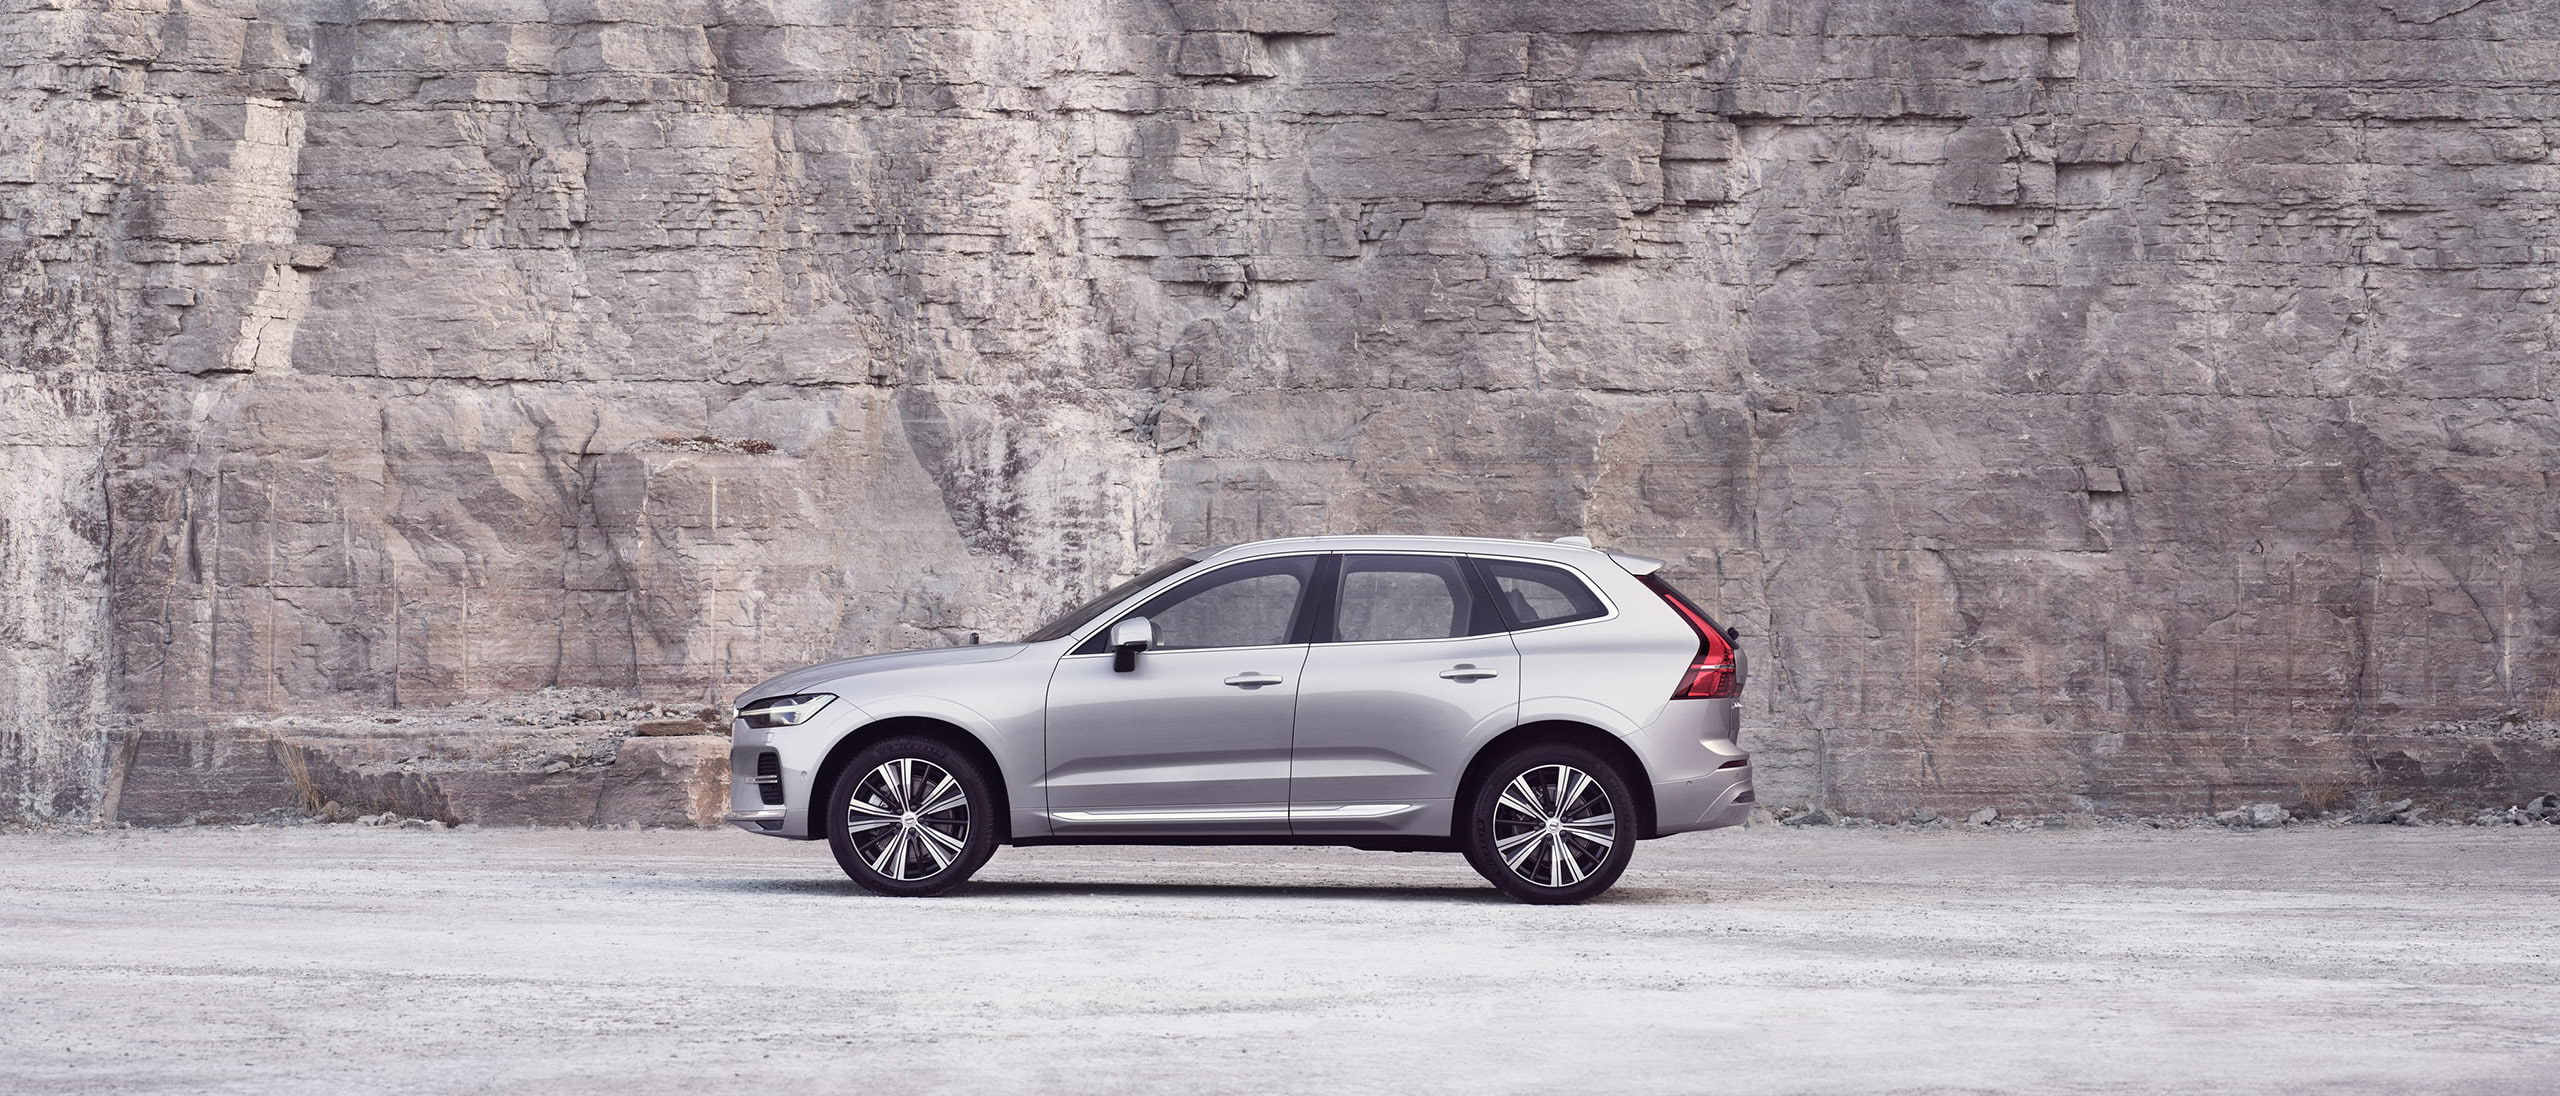 Автомобіль Volvo XC60 кольору Silver нерухомо стоїть на фоні кам’яної стіни.